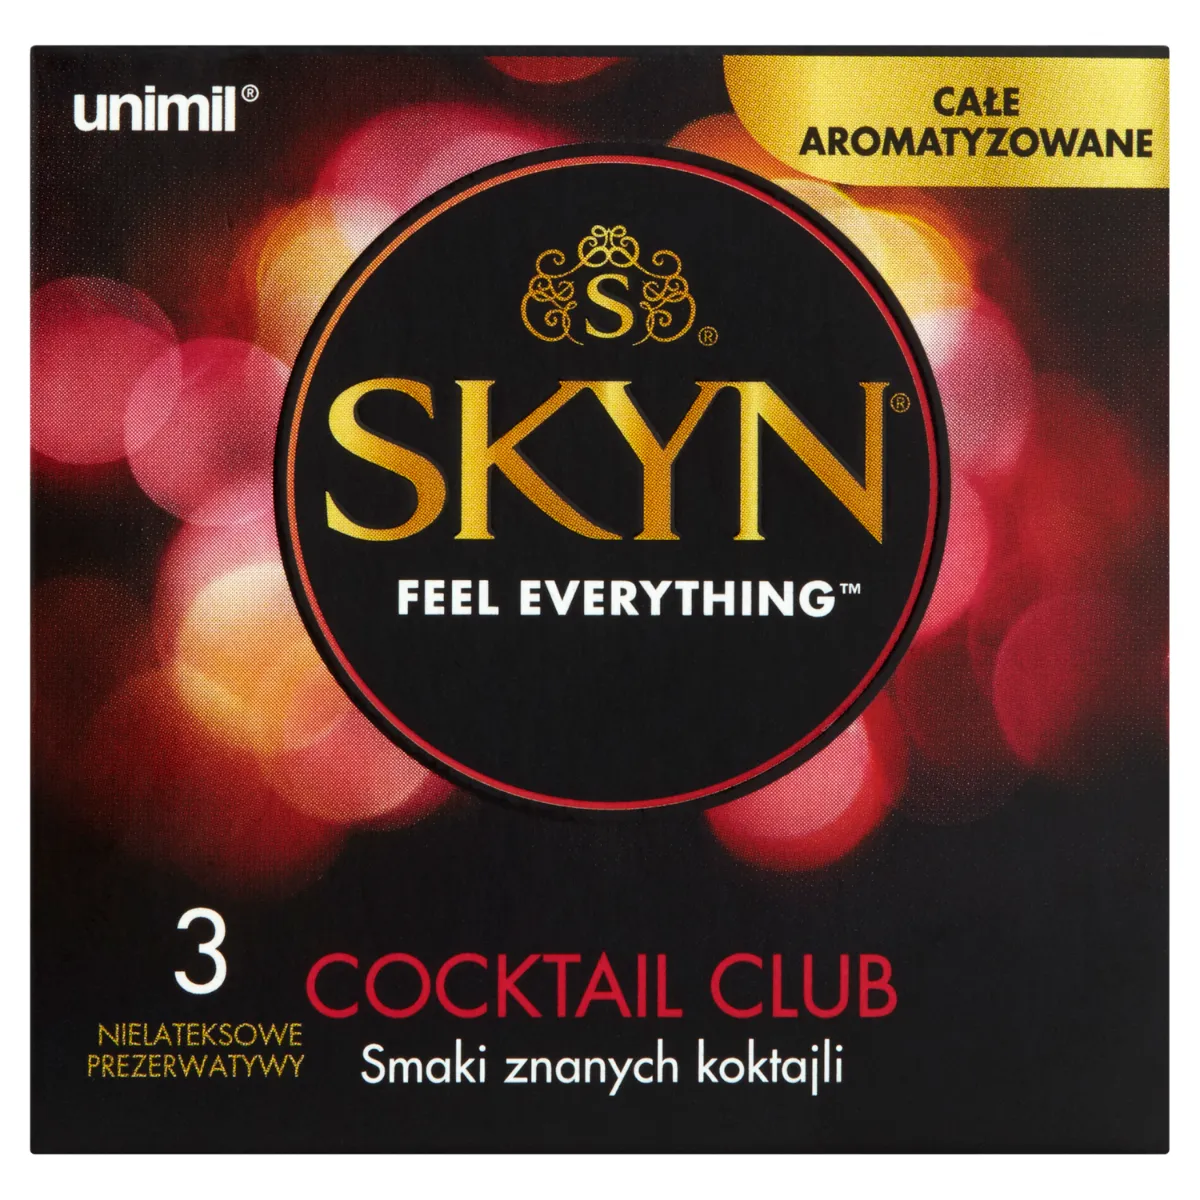 Unimil Skyn Coctail Club, nielateksowe prezerwatywy, 3 sztuki